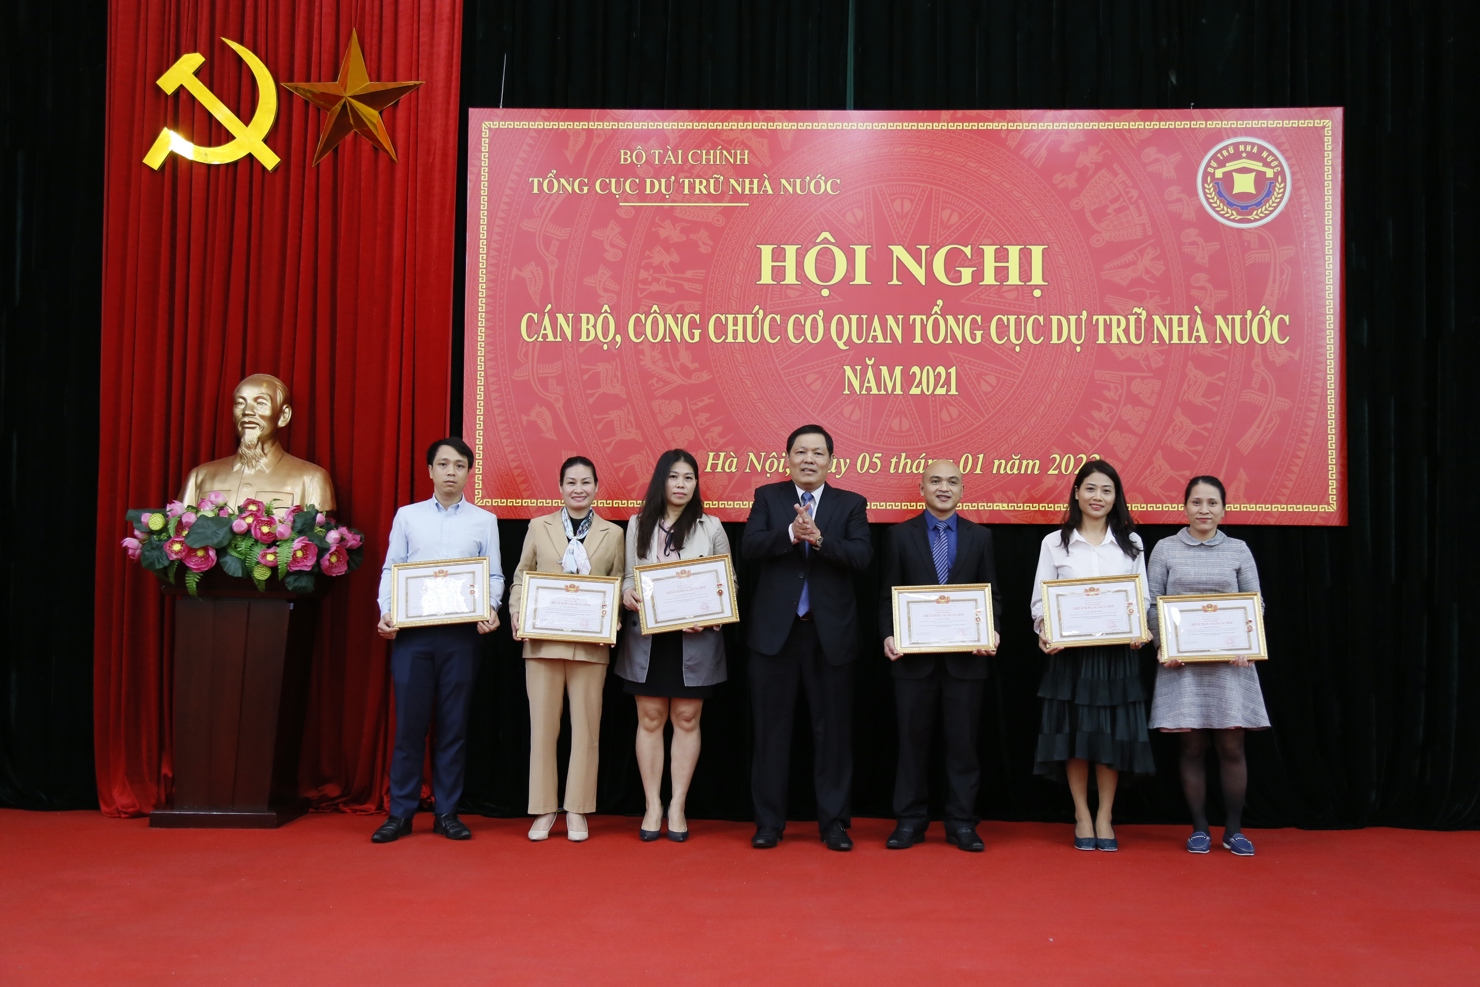 Tổng cục trưởng Tổng cục DTNN Đỗ Việt Đức trao tặng danh hiệu Chiến sỹ thi đua ngành Tài chính cho 6 cá nhân thuộc cơ quan Tổng cục 